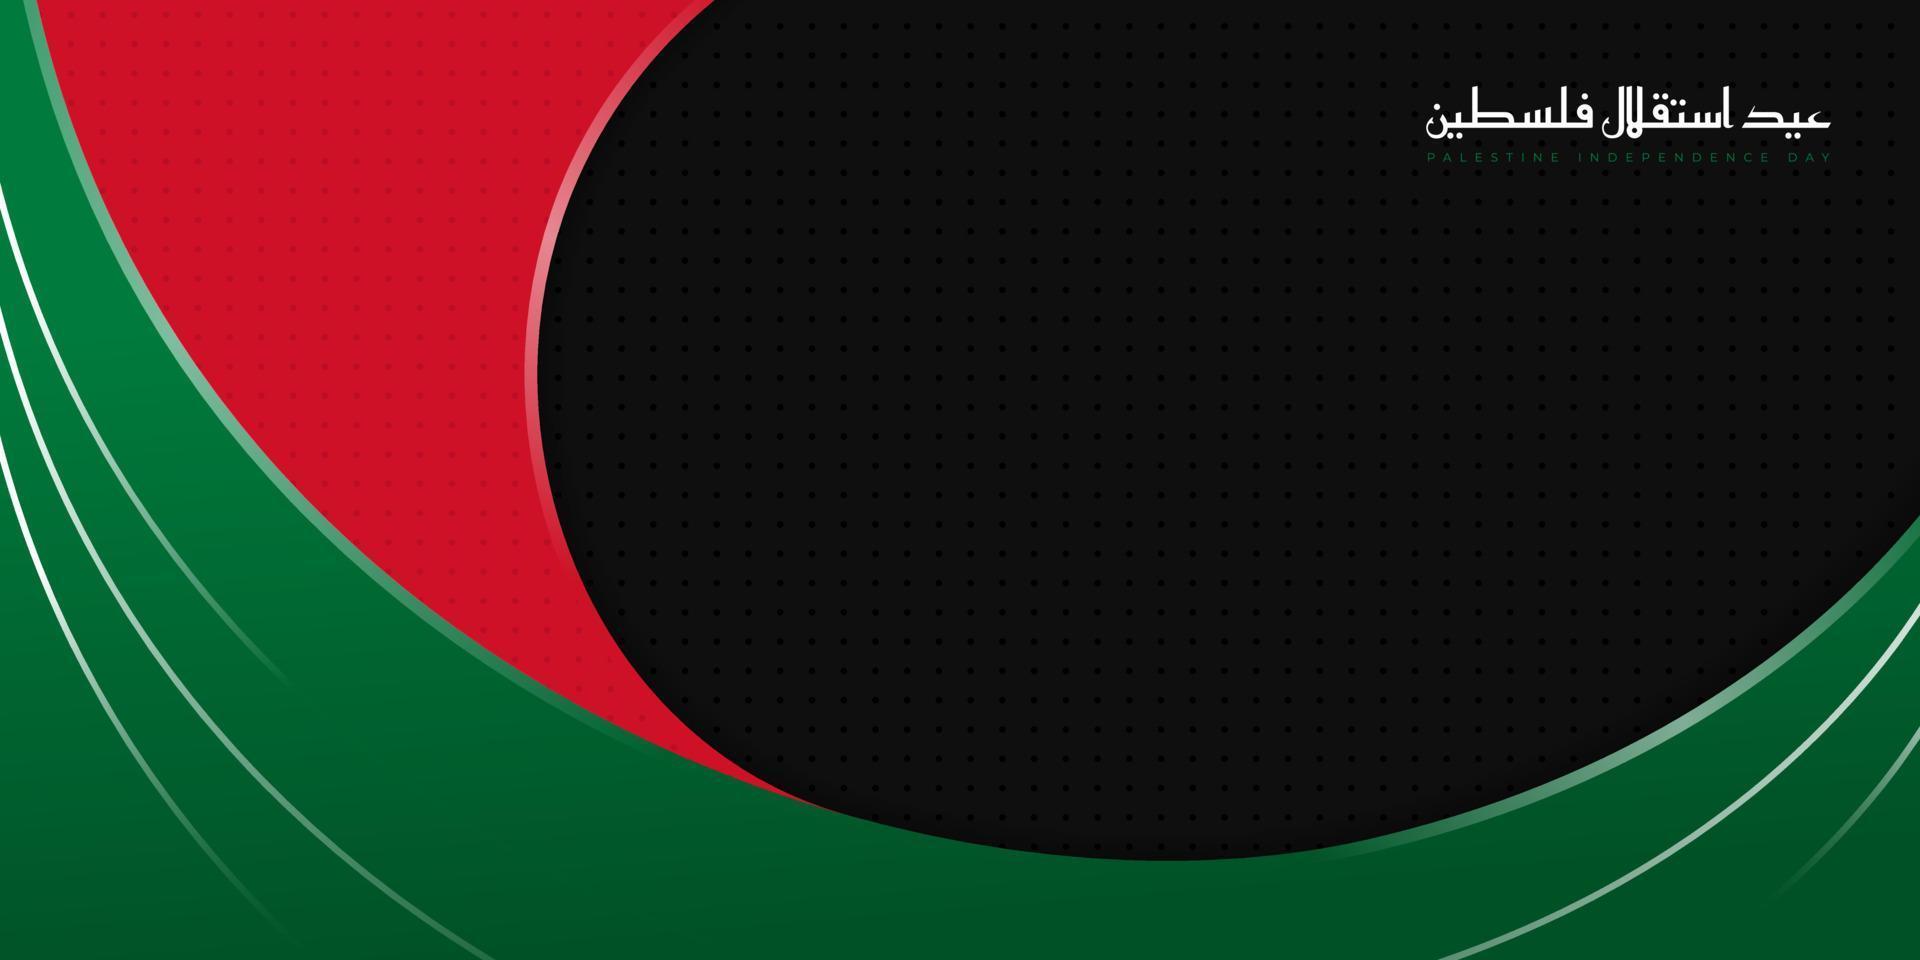 design abstrato vermelho e verde com fundo preto. texto árabe significa é dia da independência da Palestina. vetor